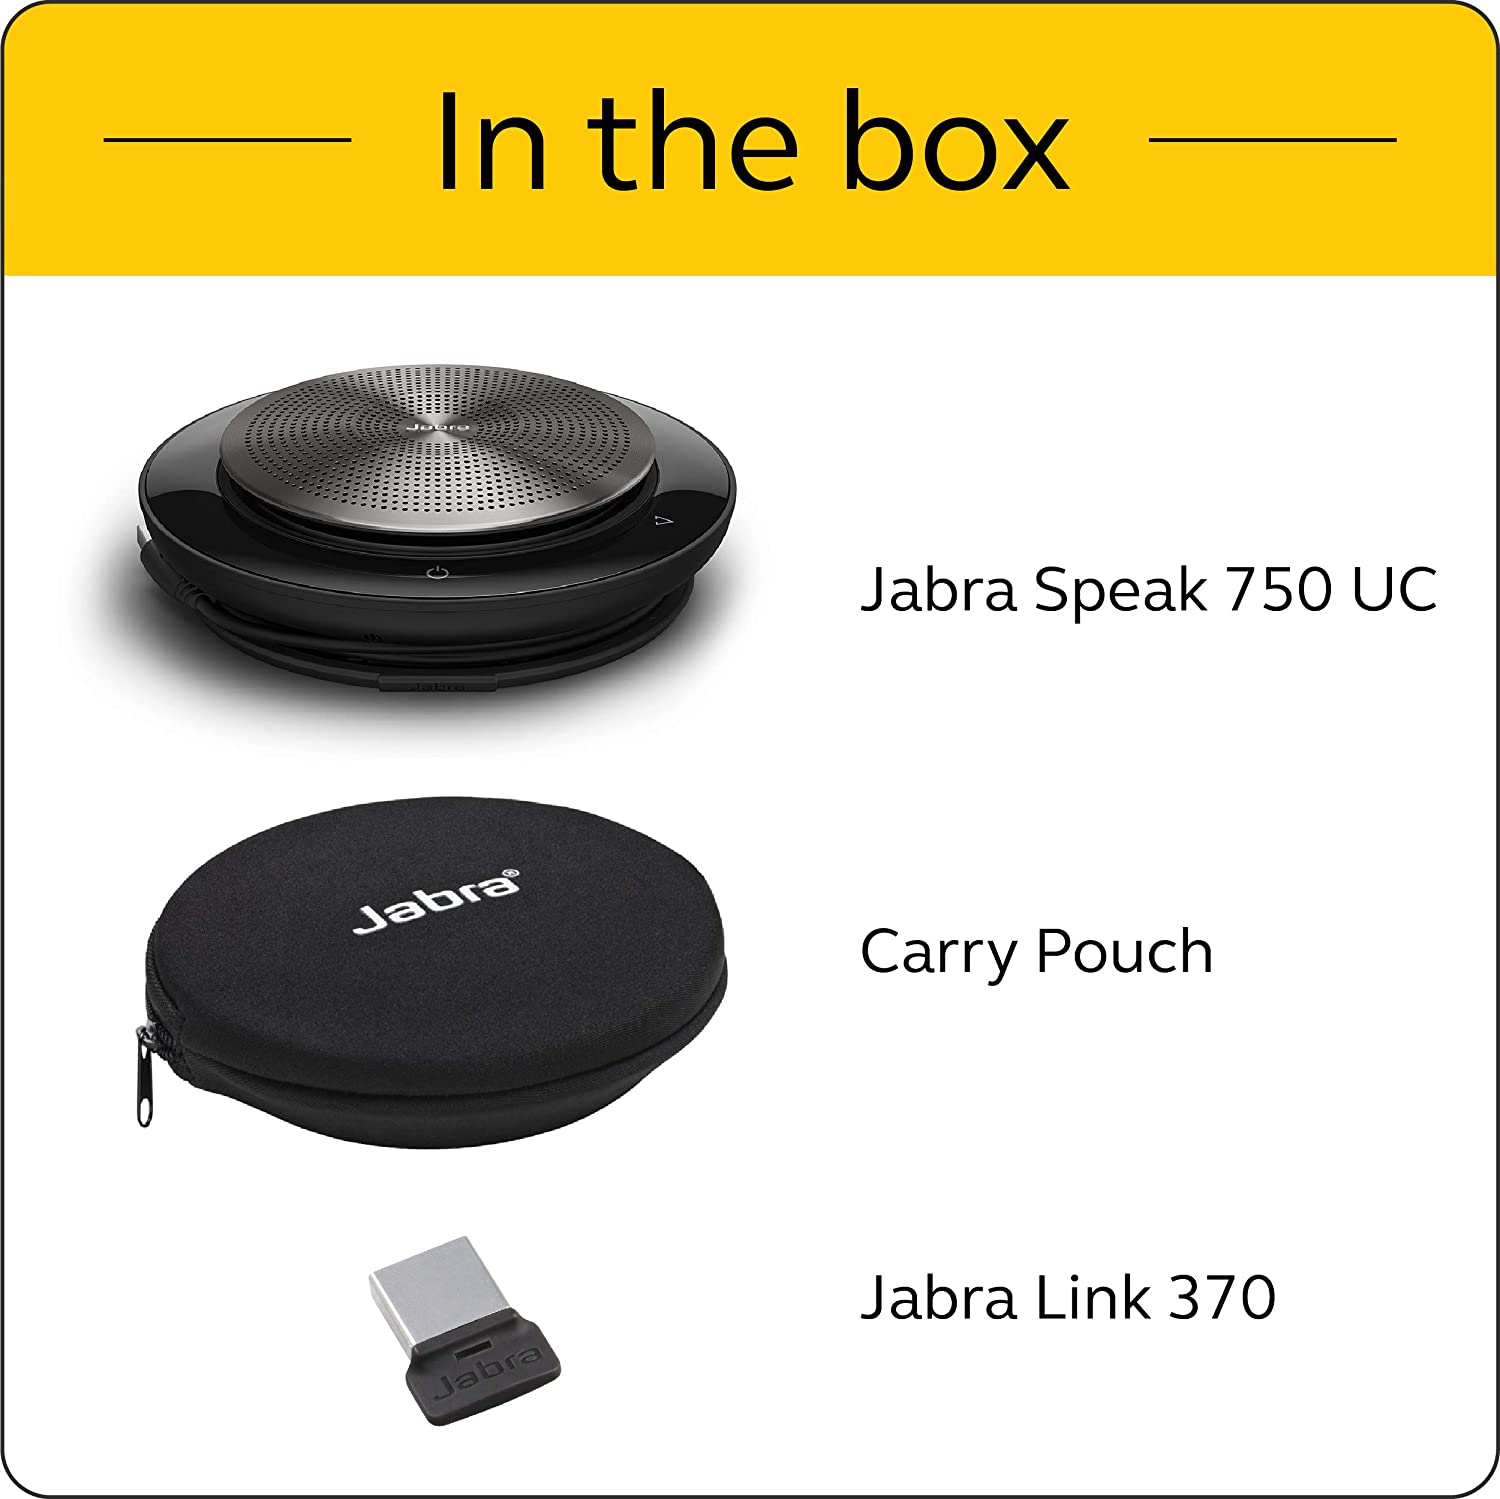 Jabra Speak 750 UC + Bluetooth USB 7700-409 Conference Speakerphone